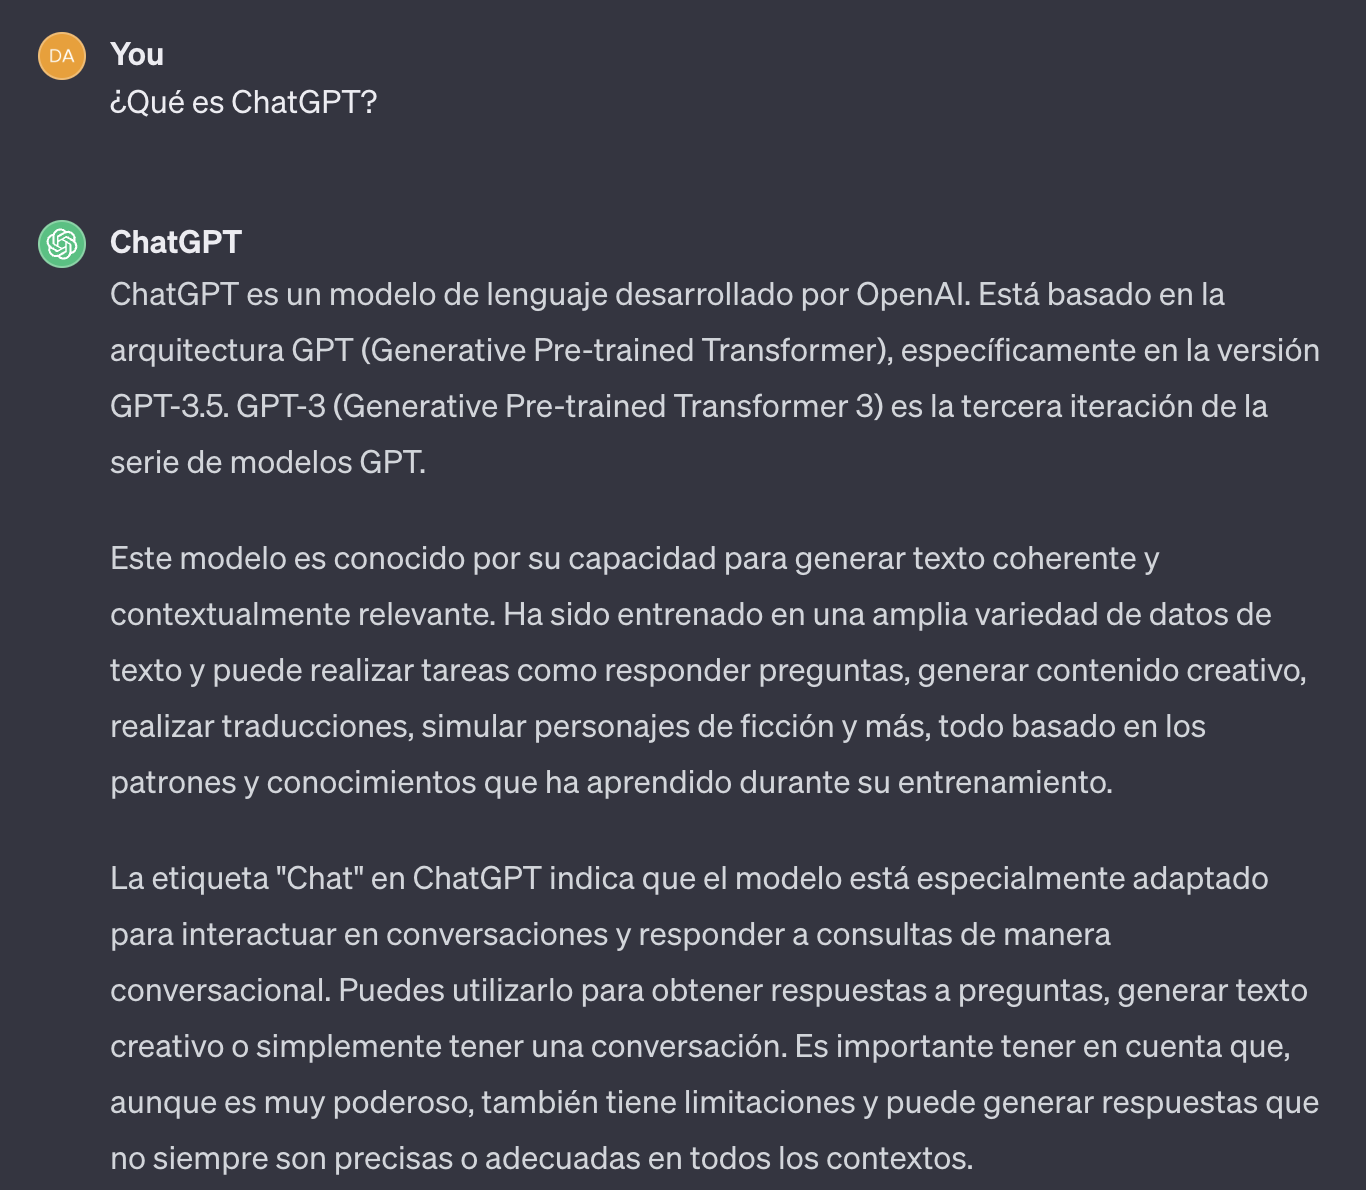 Captura de pantalla de ChatGPT respondiendo a la pregunta “¿Qué es ChatGPT?”.